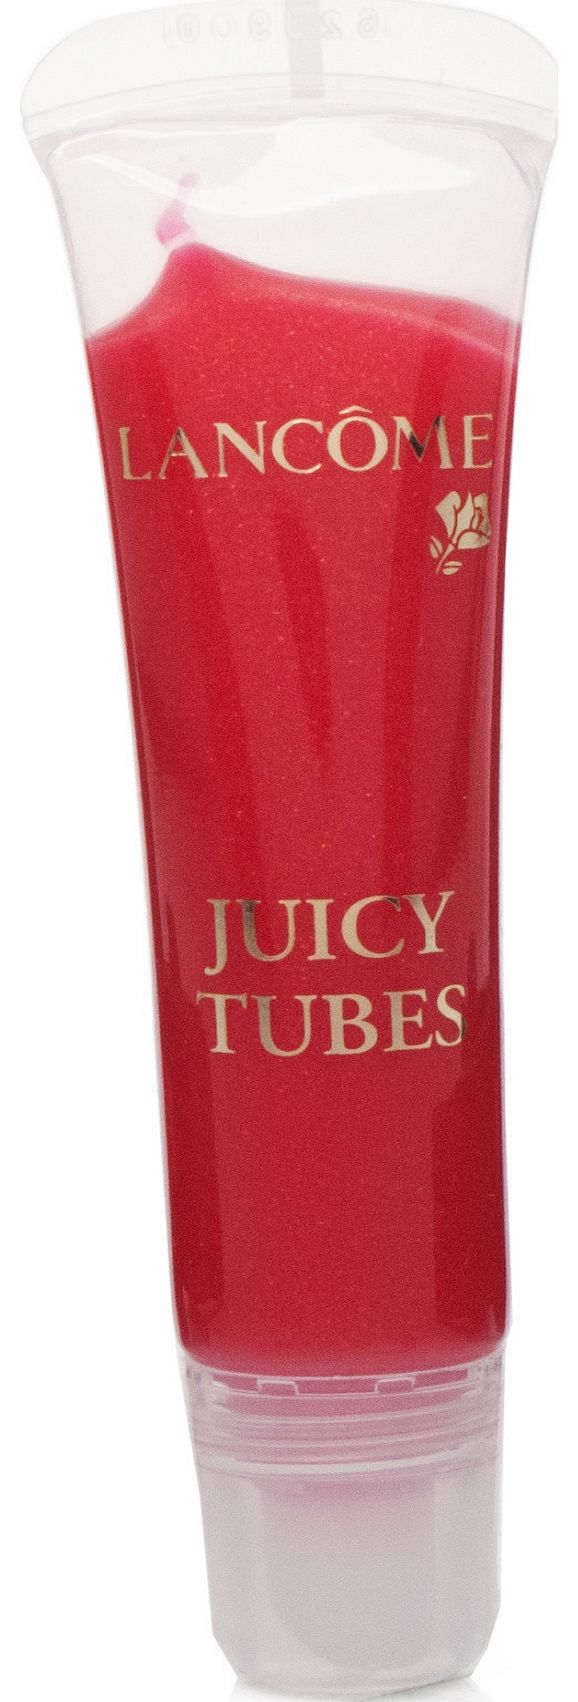 Lancome Juicy Tubes Fraise